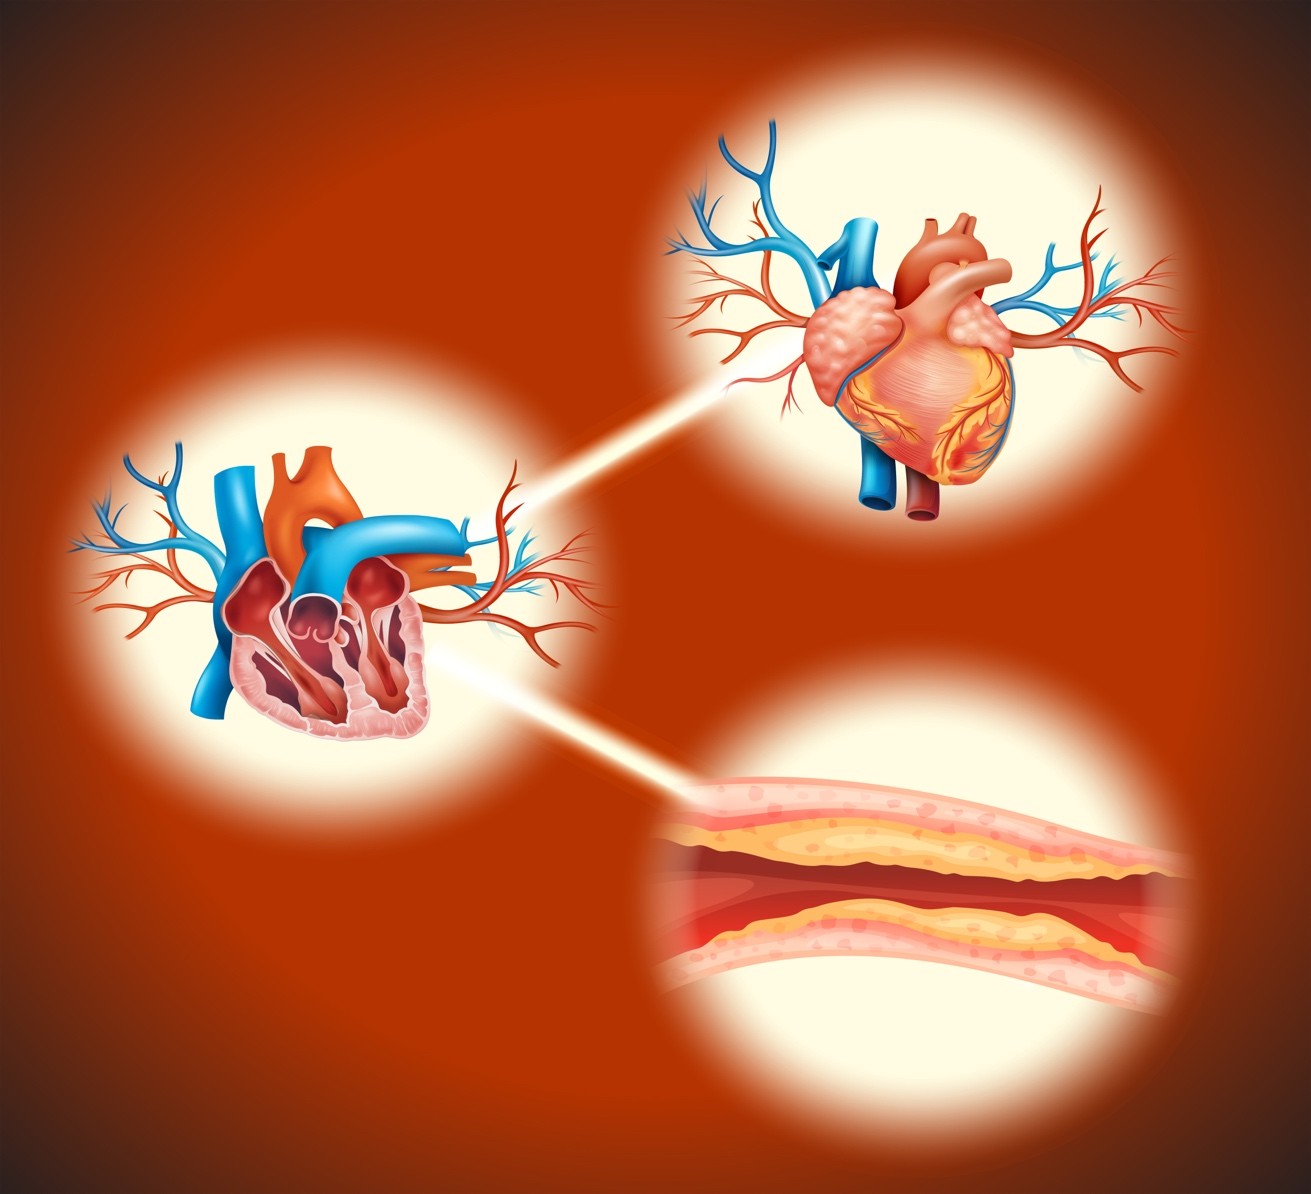 Penanganan Penyakit Jantung Koroner: Operasi atau PCI?